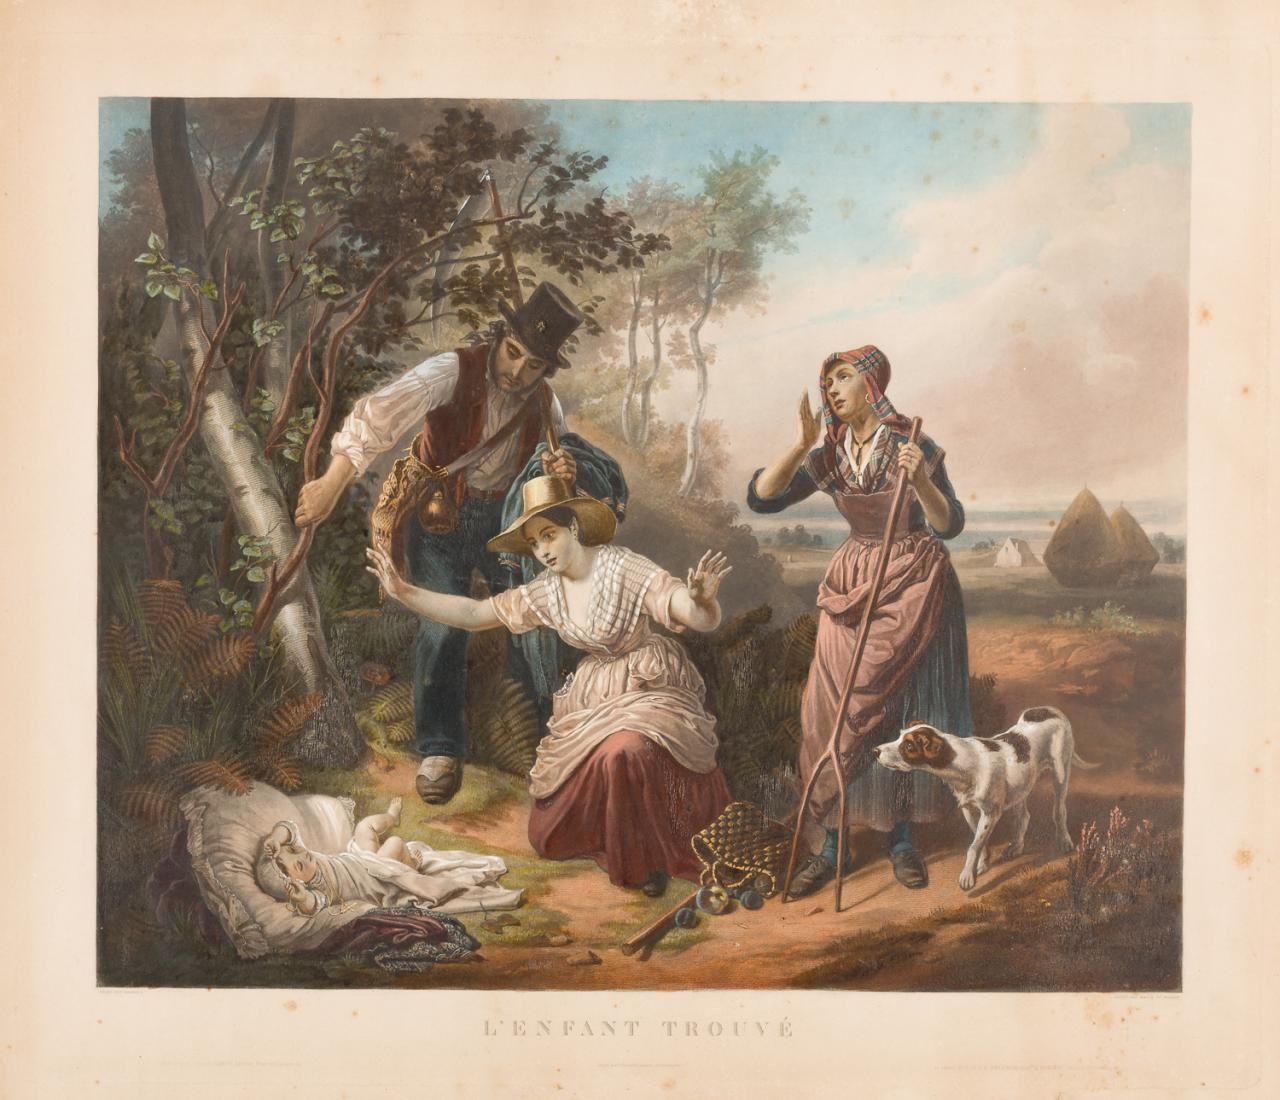 ESCUELA FRANCESA, S. XIX L'enfant trouvé
Colour lithograph
60 x 70 cm